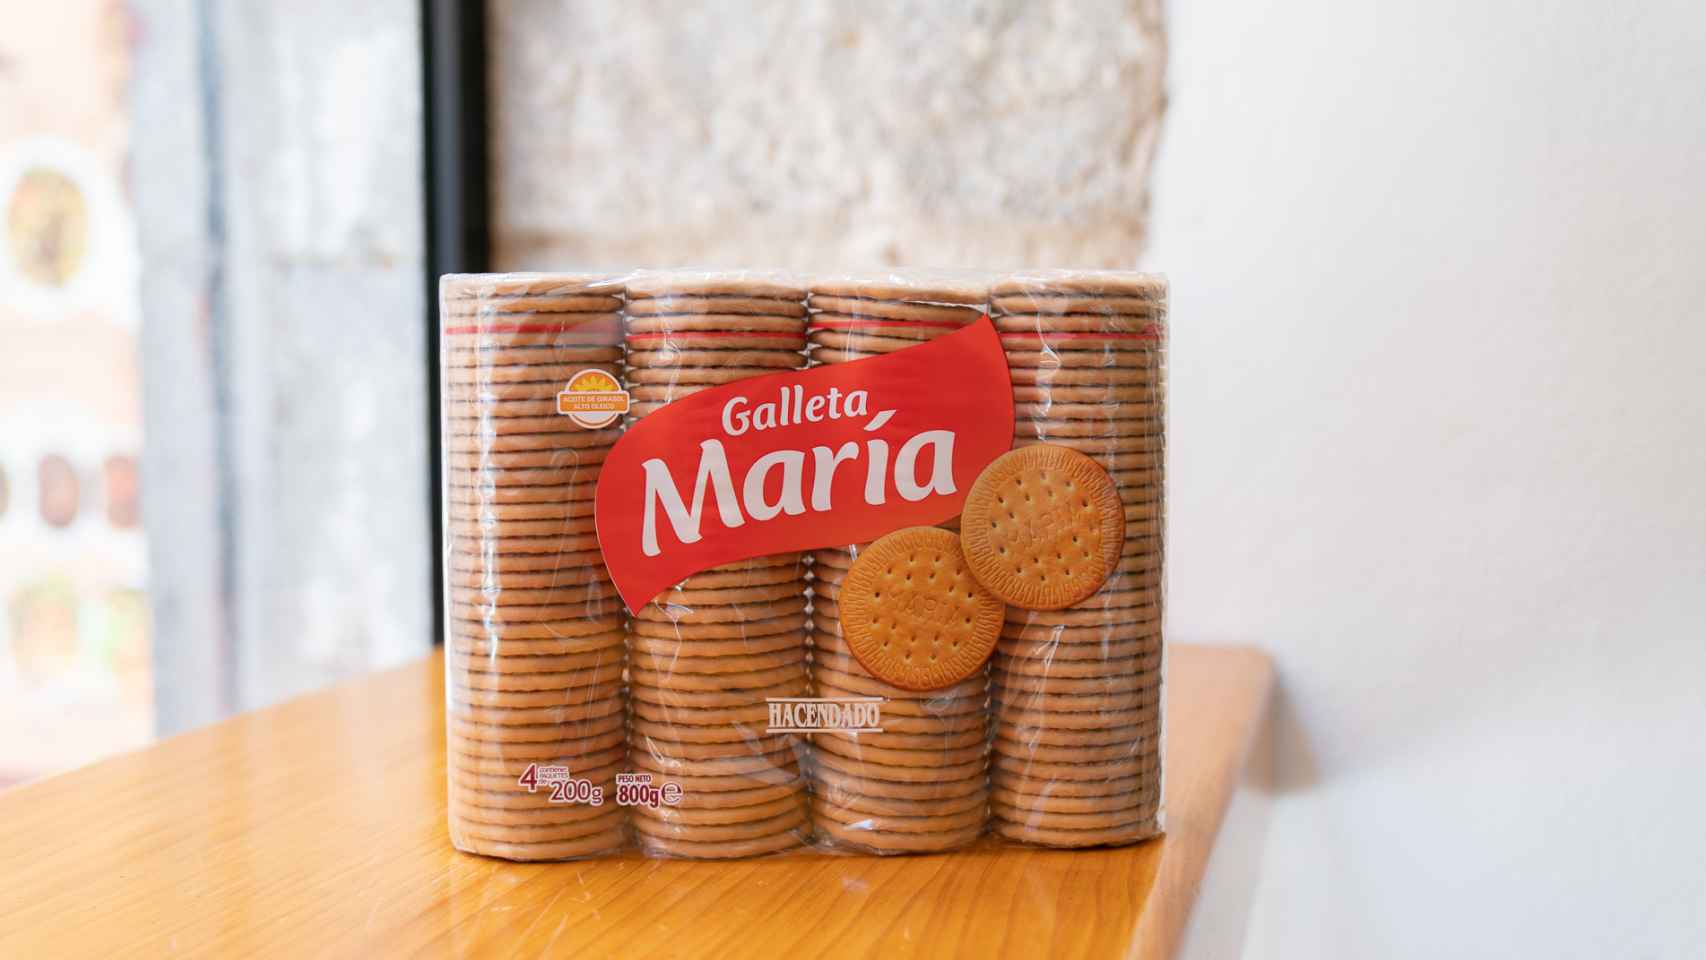 El paquete de galletas María de Hacendado, la marca blanca de Mercadona.